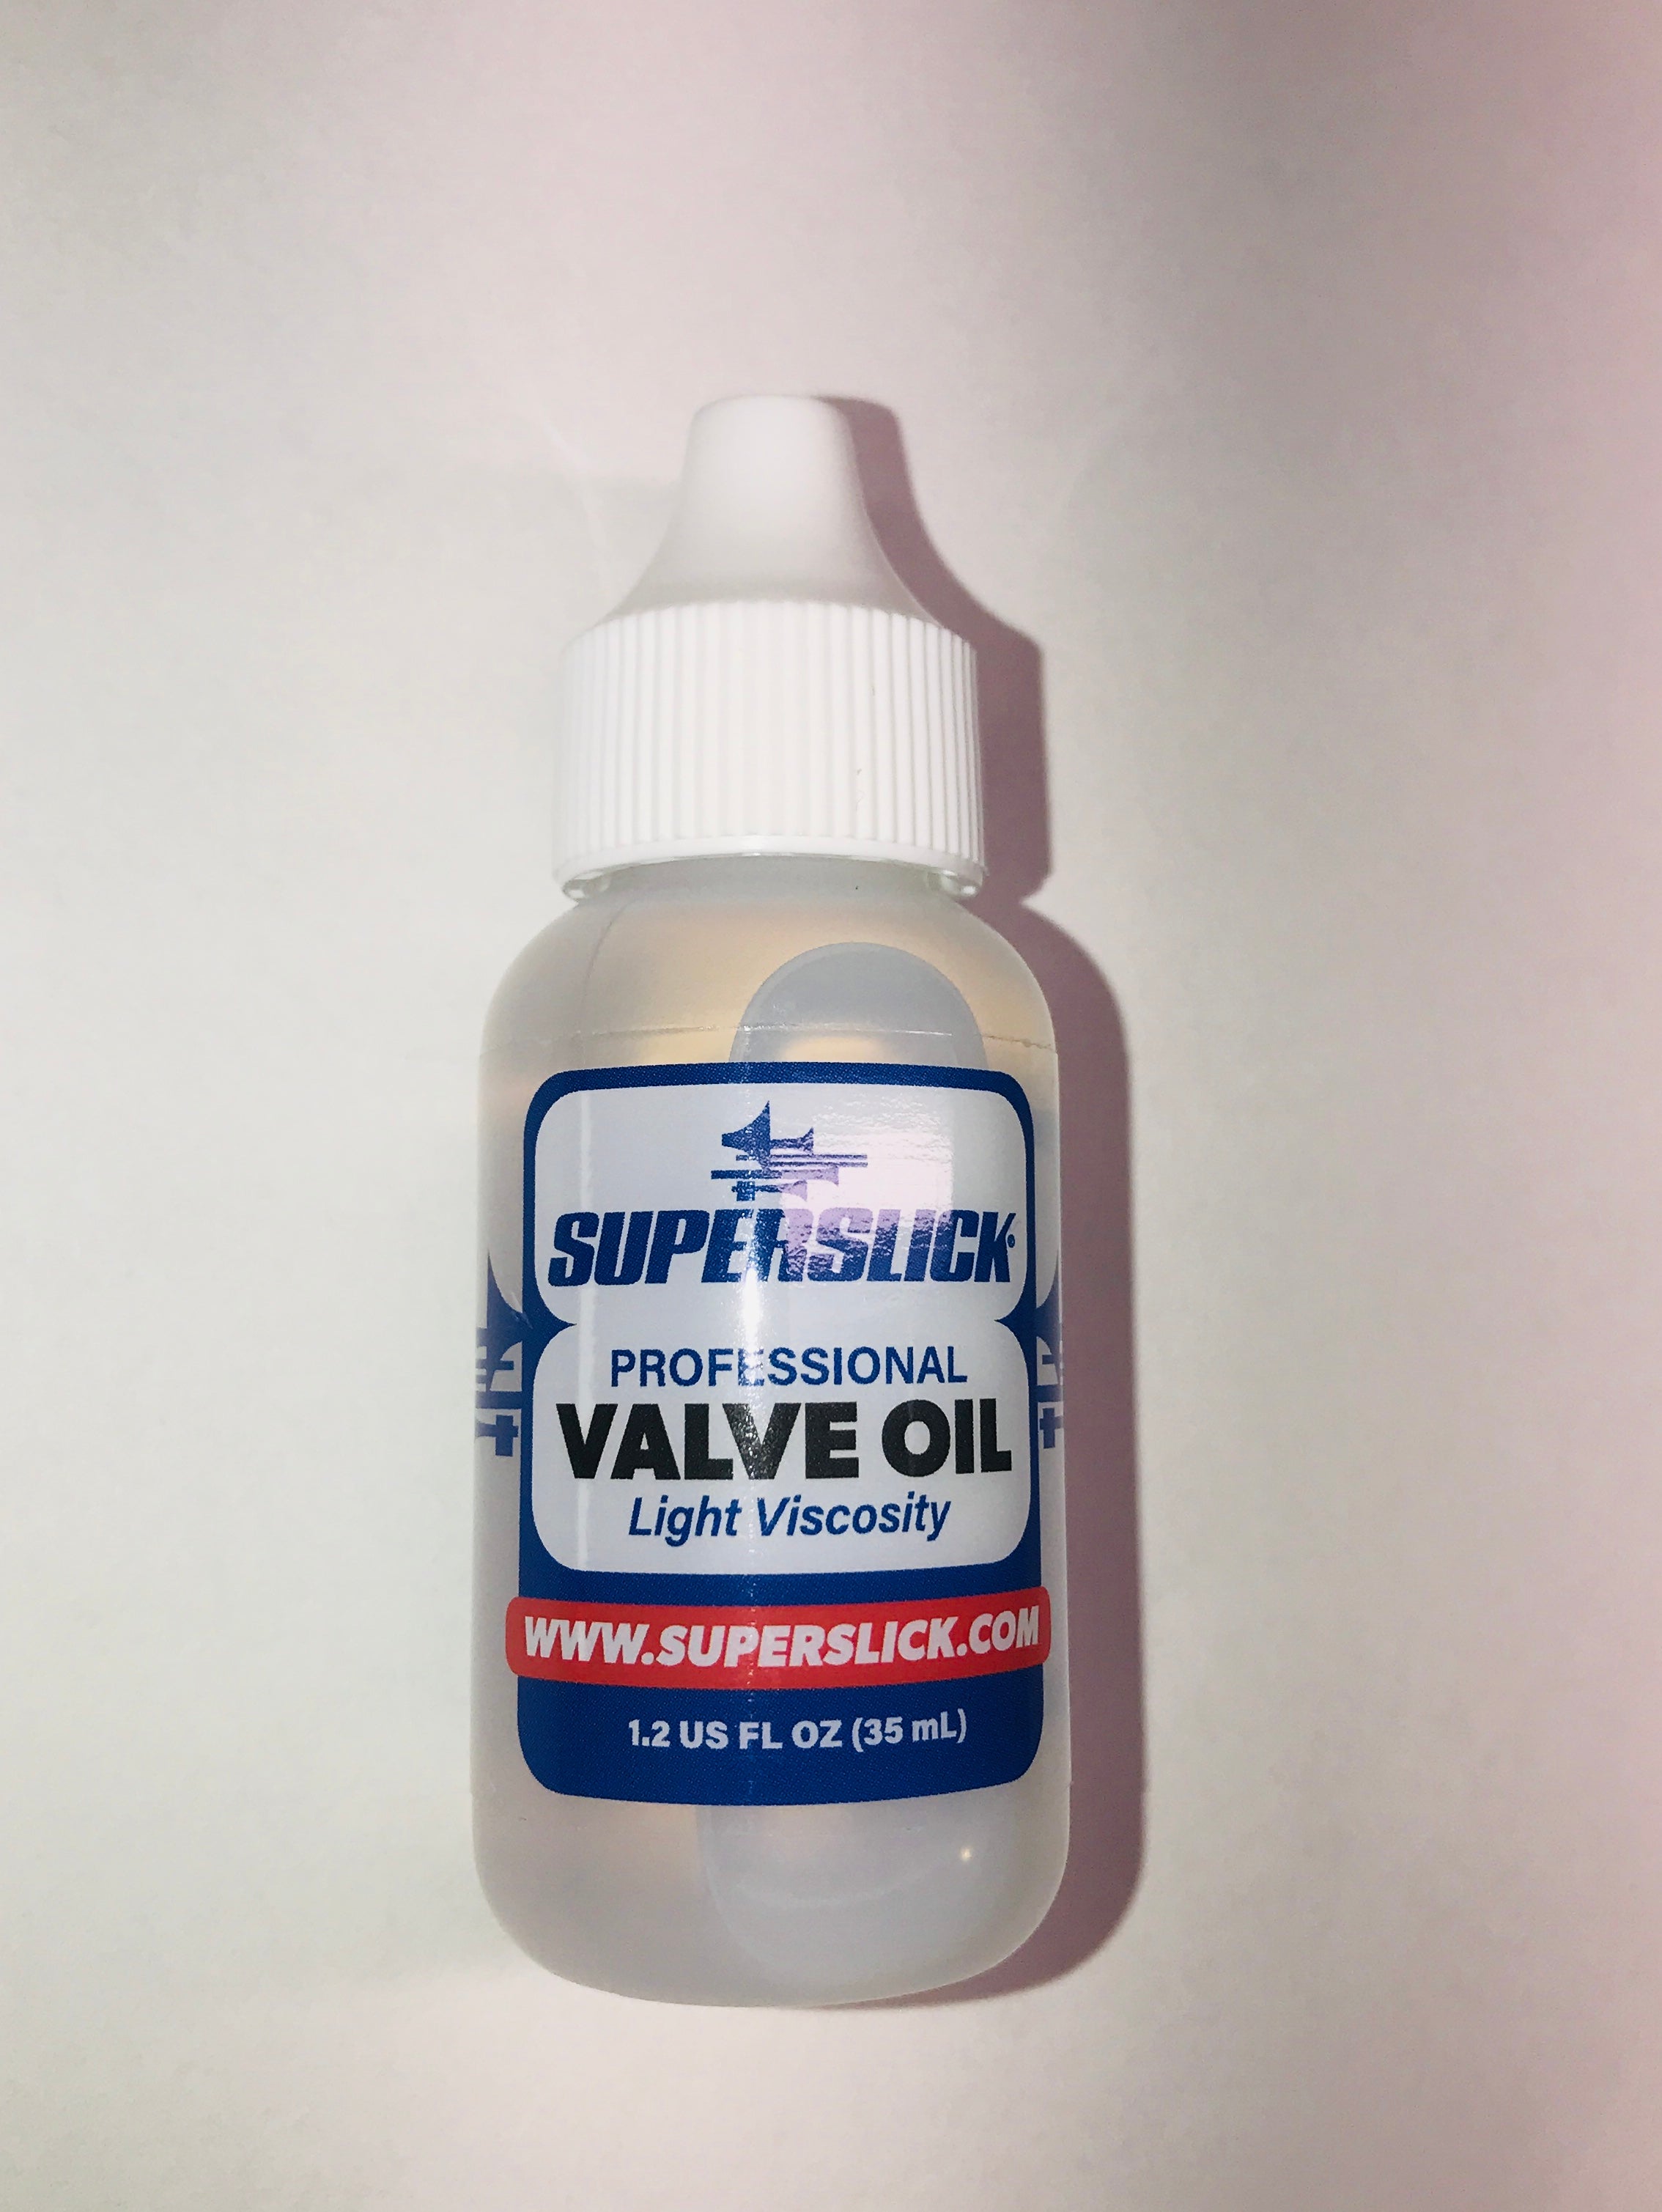 Superslick Professional Valve Oil Light Viscosity 1.25oz New bottle and label design